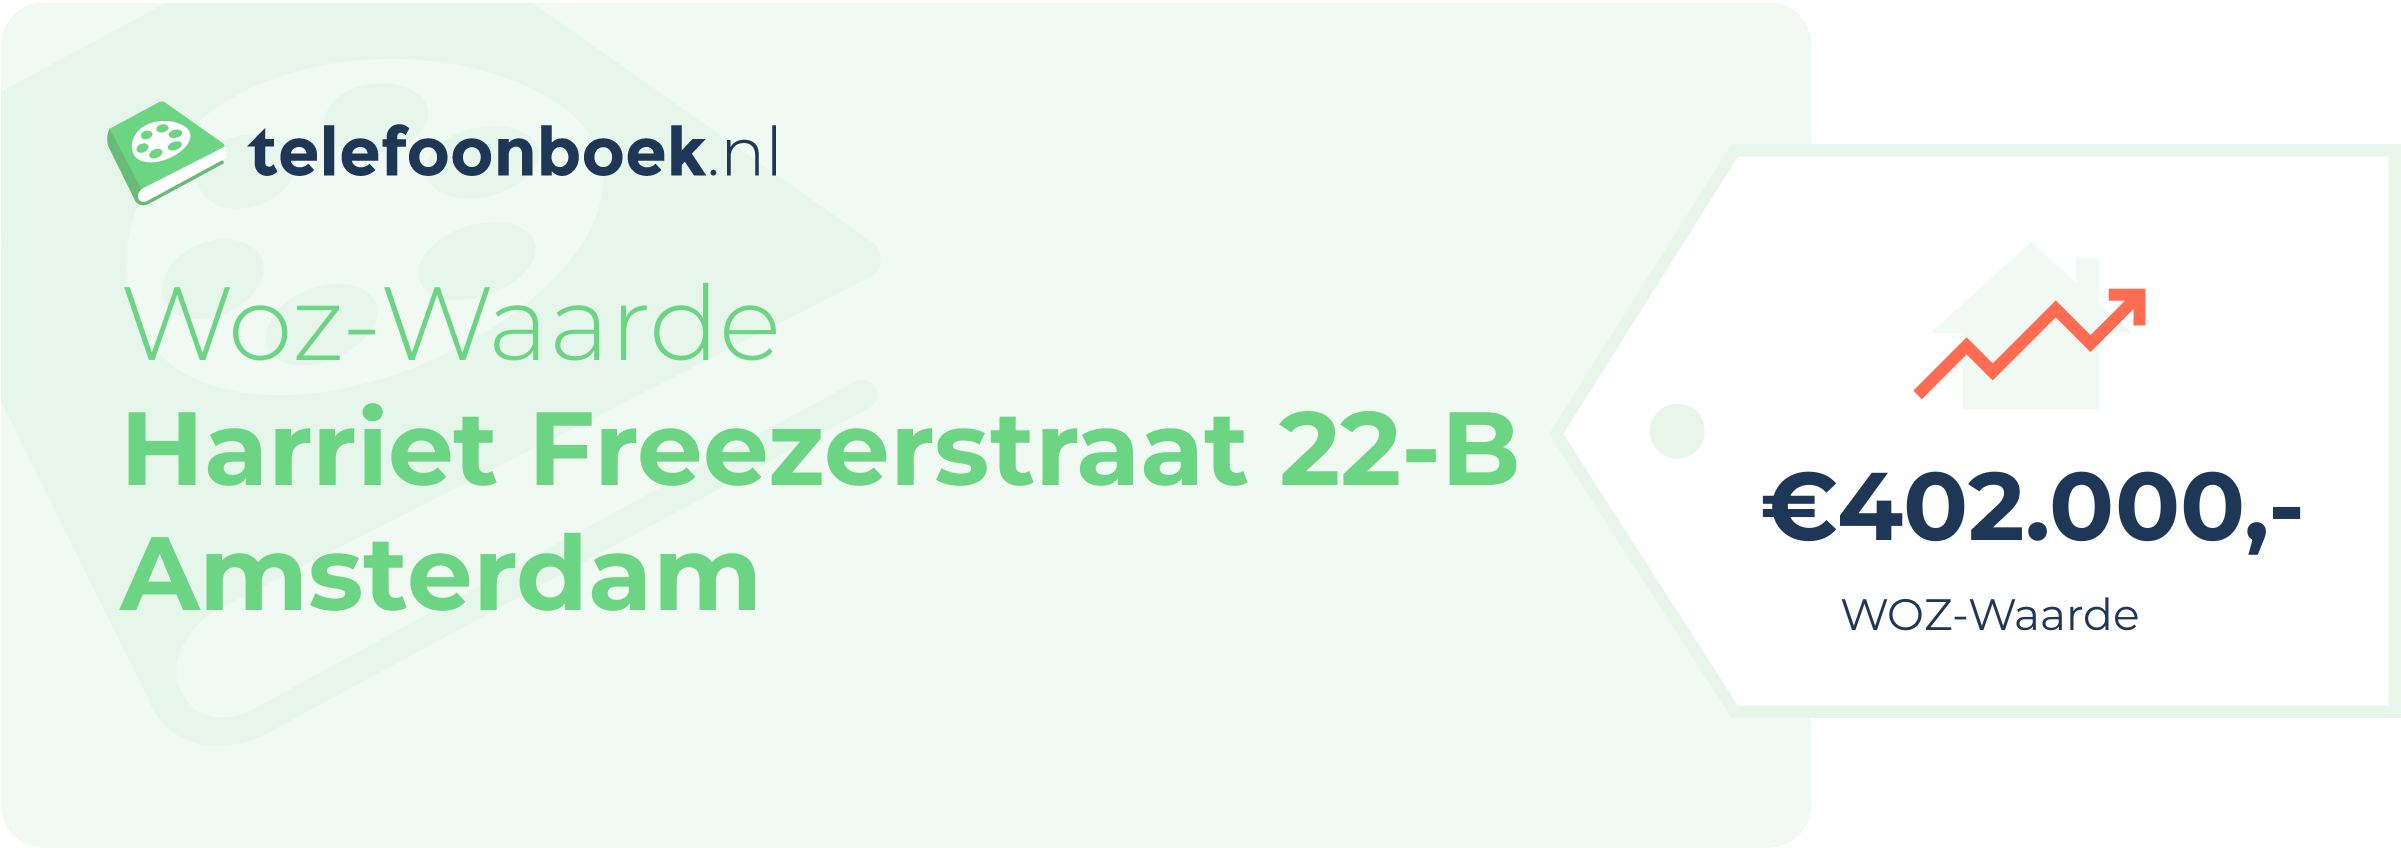 WOZ-waarde Harriet Freezerstraat 22-B Amsterdam